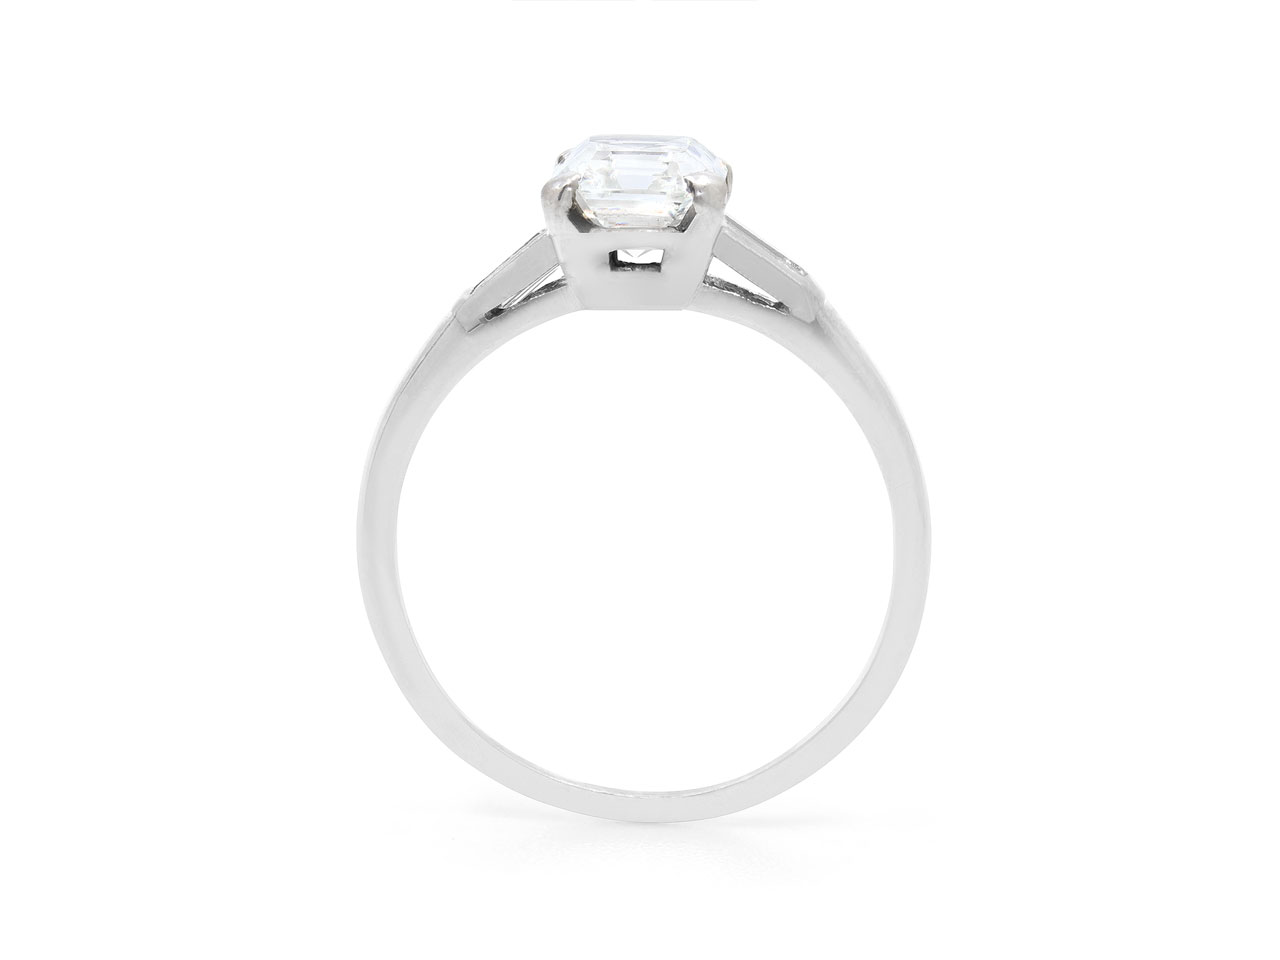 Art Deco Emerald Cut Diamond Ring, 1.32 carat H/VS2, in Platinum